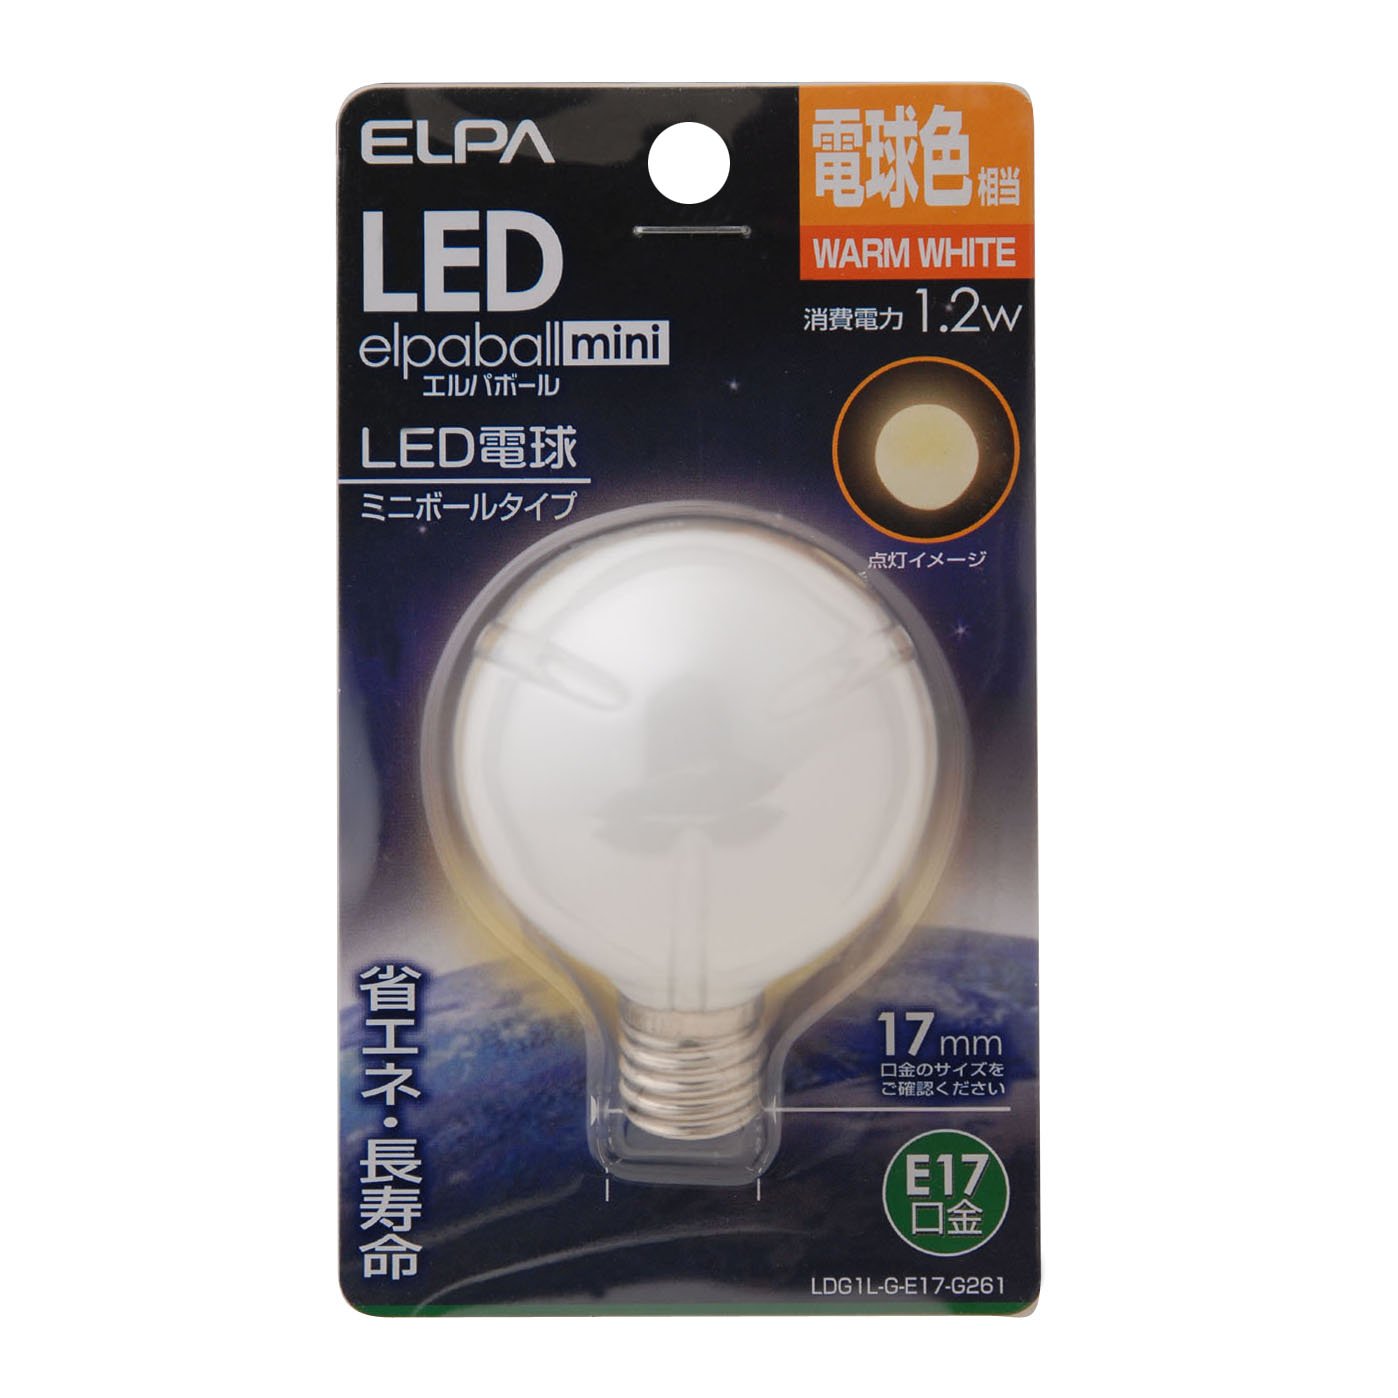 エルパ (ELPA) LED電球G50形 LED電球 照明 E17 1.2W 45lm 電球色 LDG1L-G-E17-G261